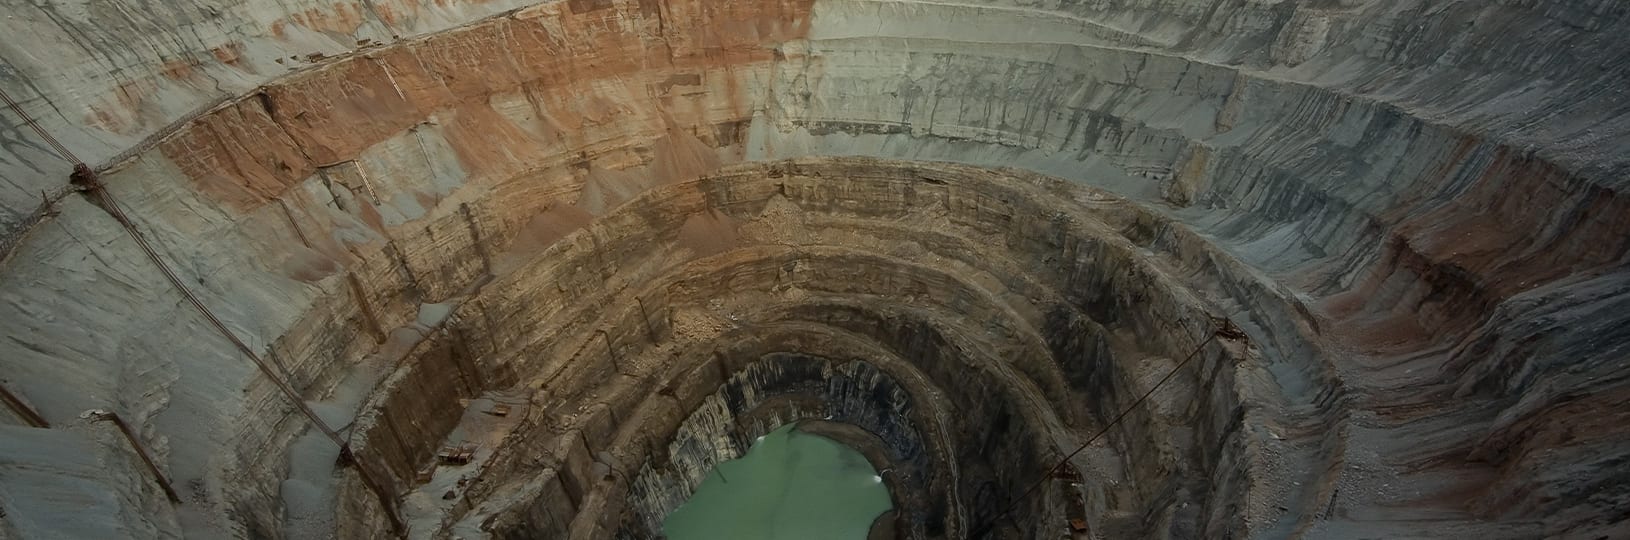 Aerial image of a diamond mine